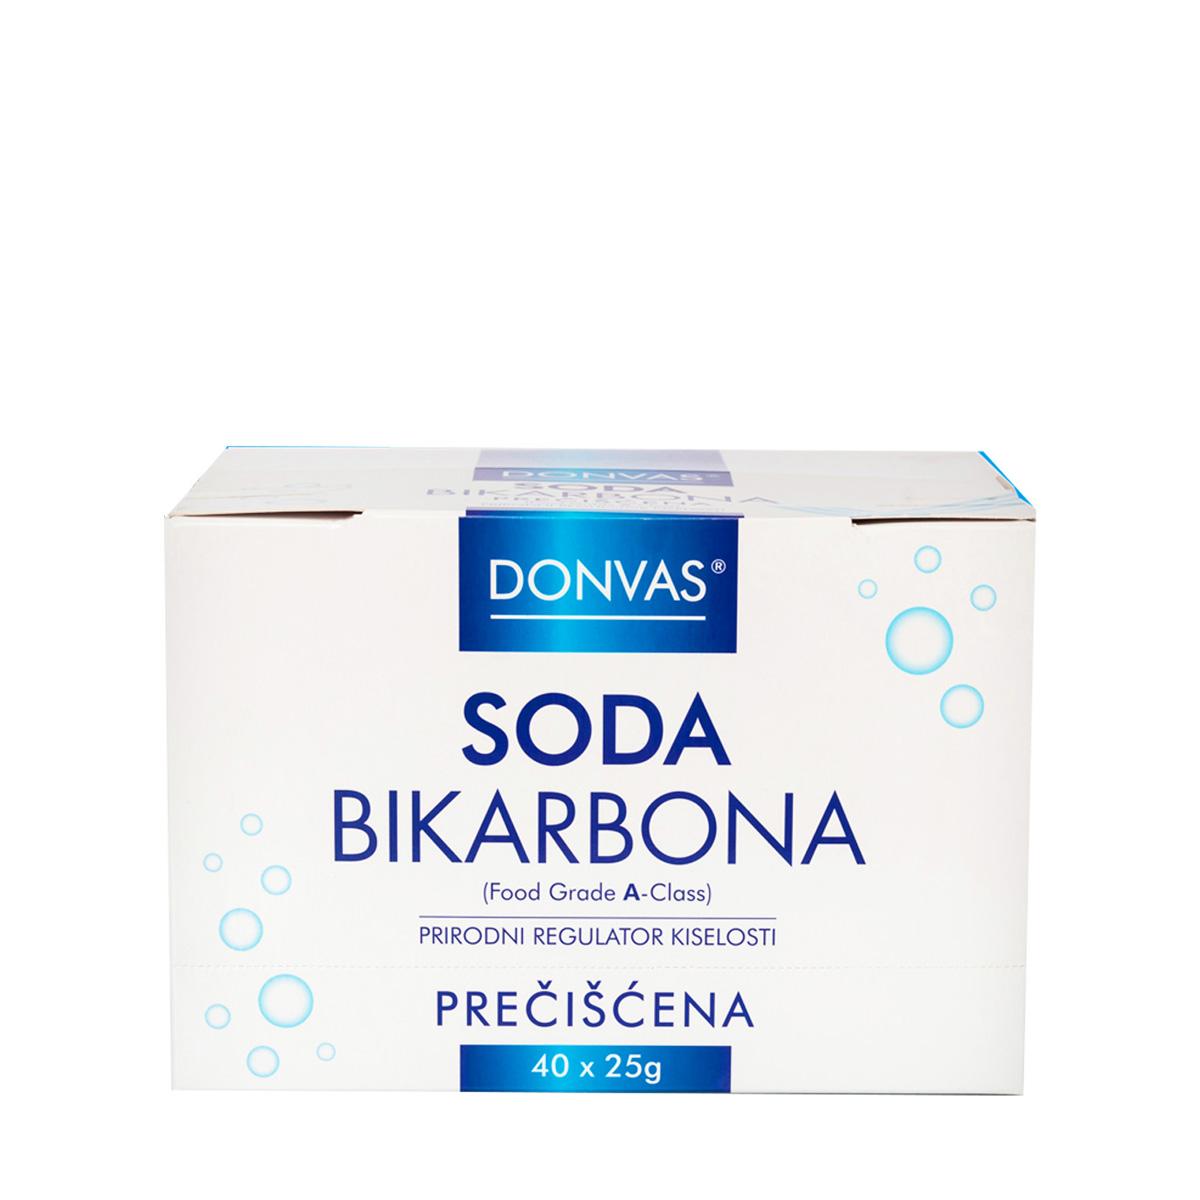 Selected image for DONVAS Soda bikarbona prečišćena 25g 40/1